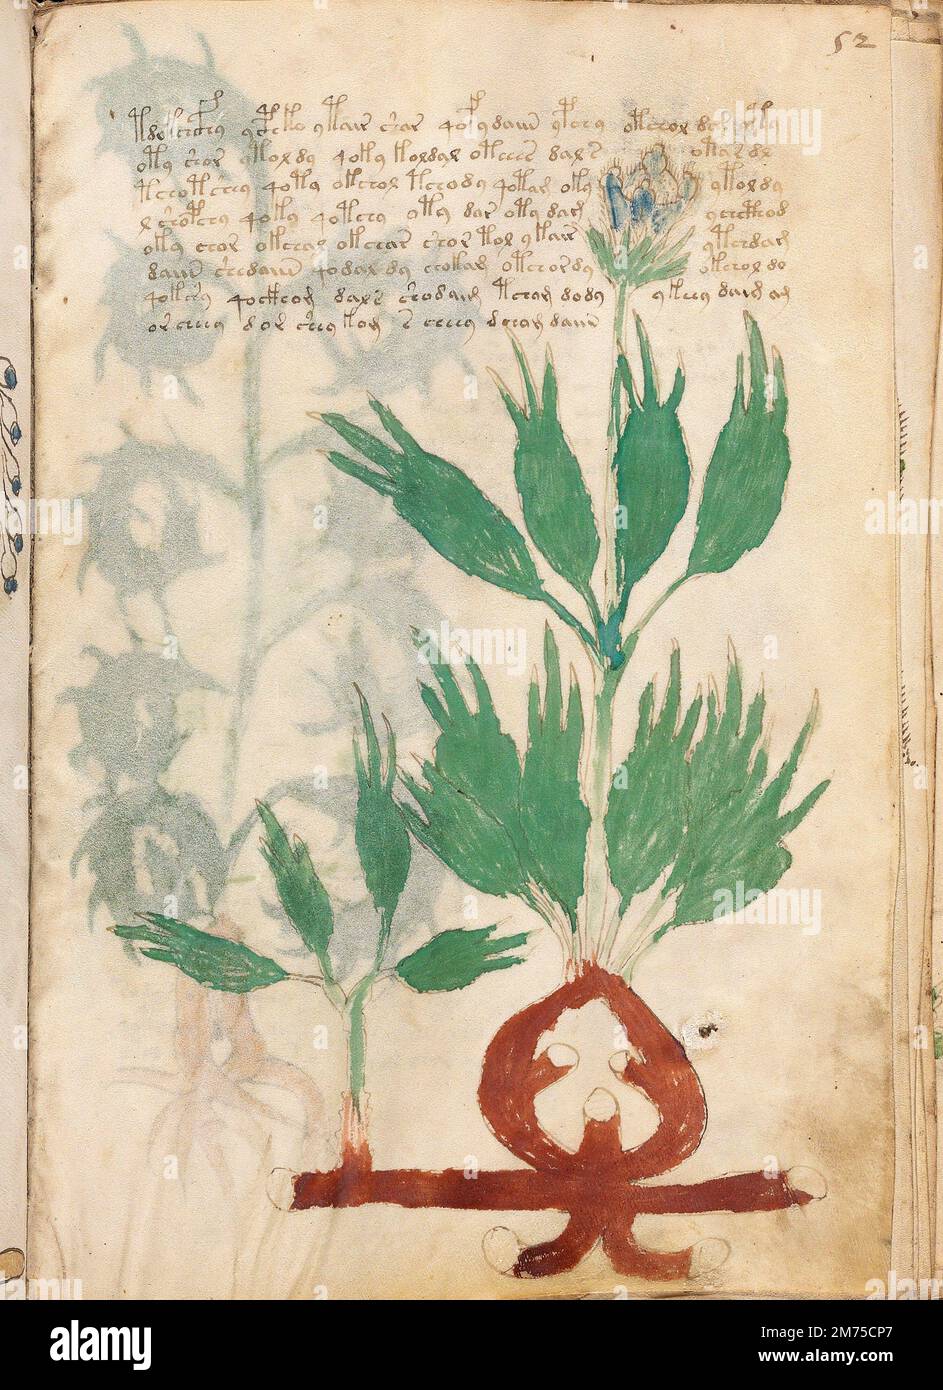 Manuscrito de Voynich. Una página de muestra del manuscrito de Voynich, un códice ilustrado escrito a mano en un sistema de escritura desconocido. Datado a principios del siglo 15th. Foto de stock